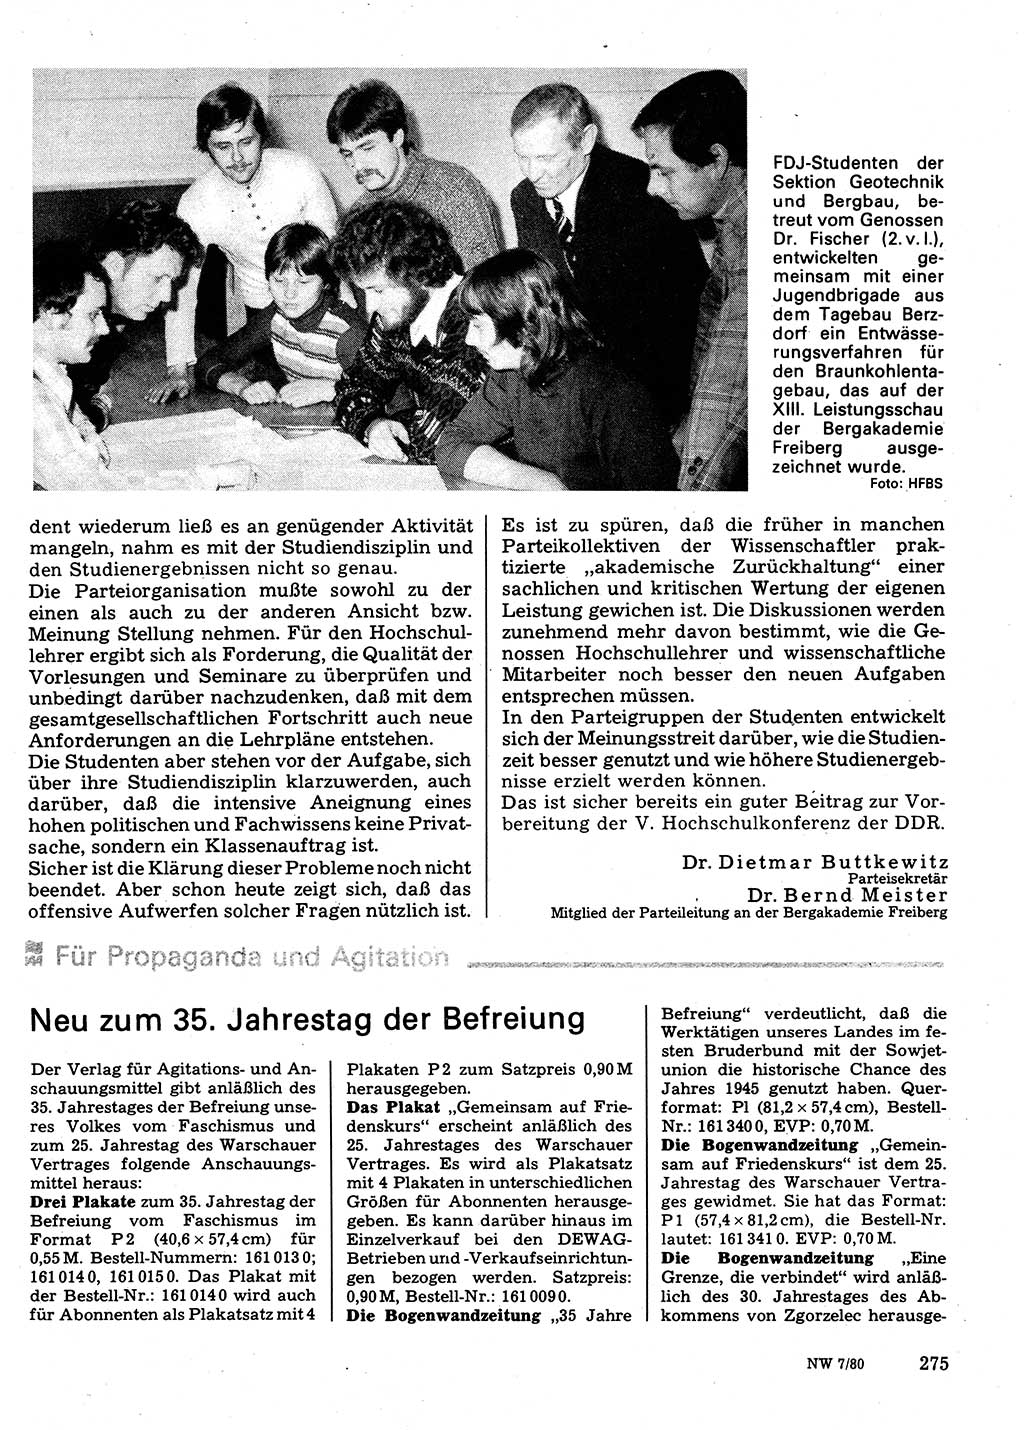 Neuer Weg (NW), Organ des Zentralkomitees (ZK) der SED (Sozialistische Einheitspartei Deutschlands) für Fragen des Parteilebens, 35. Jahrgang [Deutsche Demokratische Republik (DDR)] 1980, Seite 275 (NW ZK SED DDR 1980, S. 275)